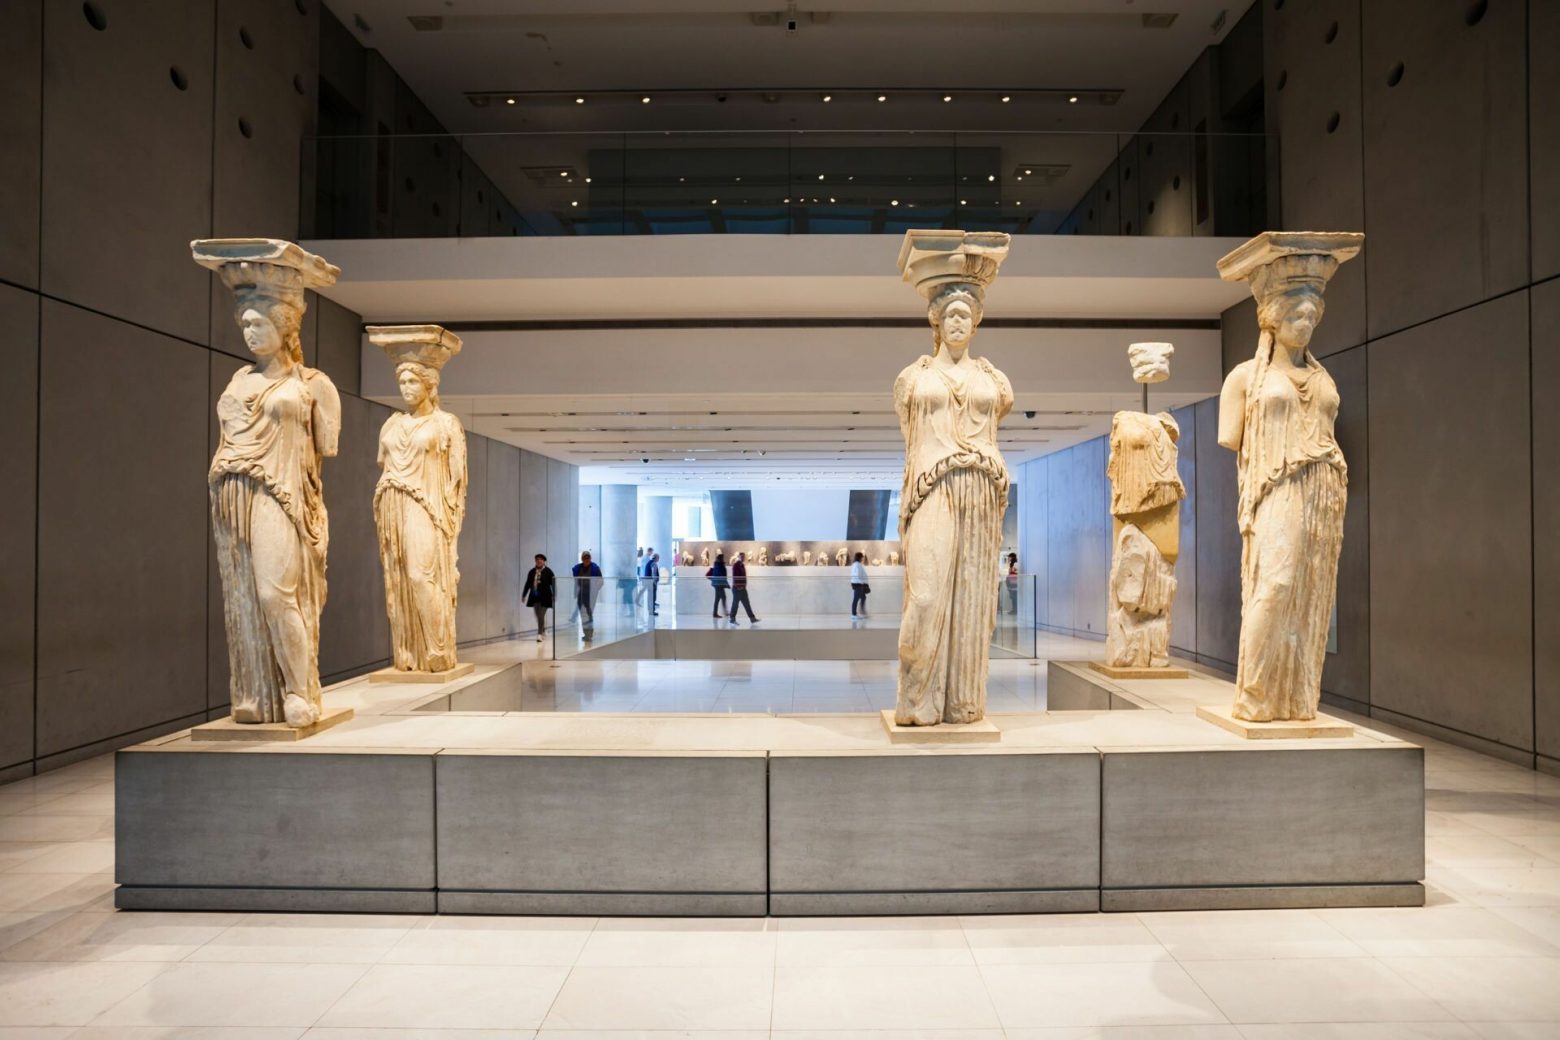 Μουσείο της Ακρόπολης - Ολοκληρώθηκε ο σχεδιασμός του ιστοτόπου